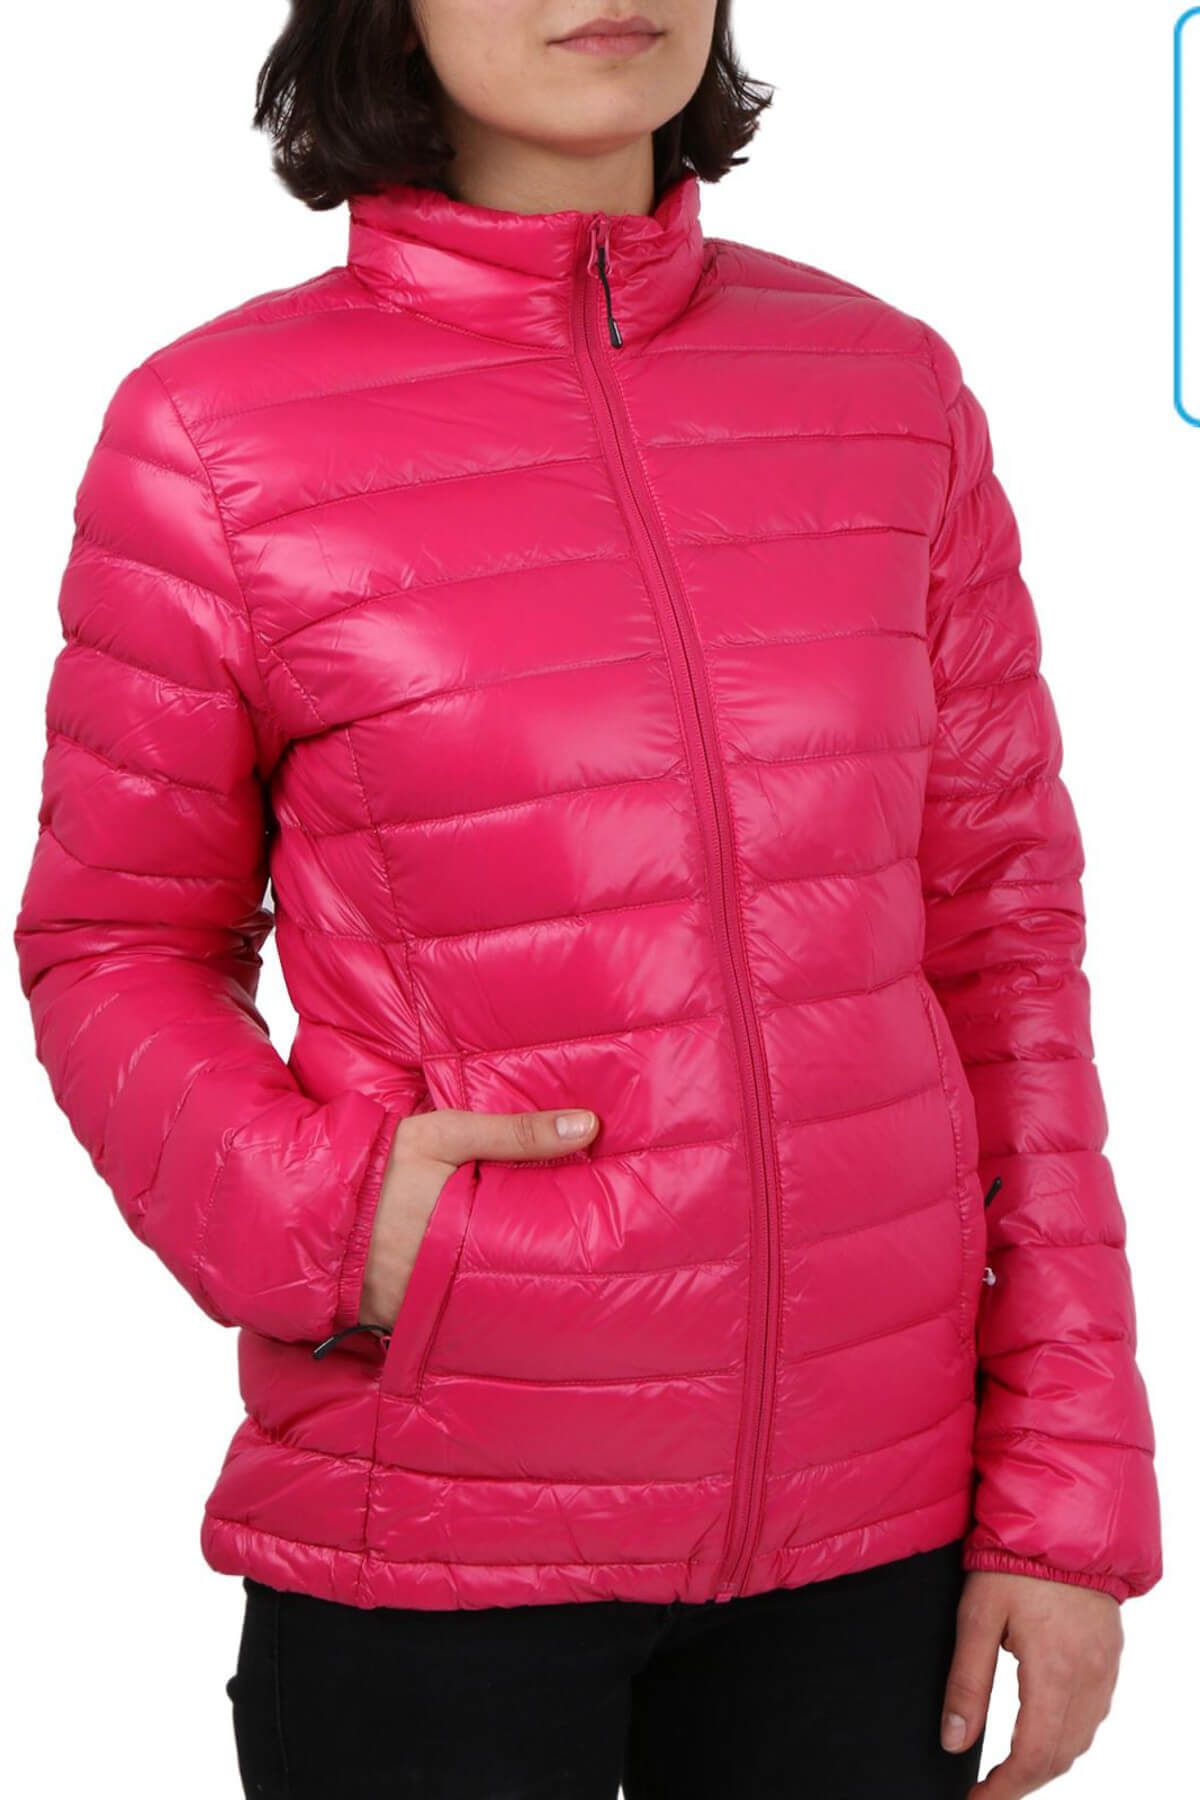 Icepeak Kadın Outdoor Montu Pembe Virpa Jacket 53212 815 655